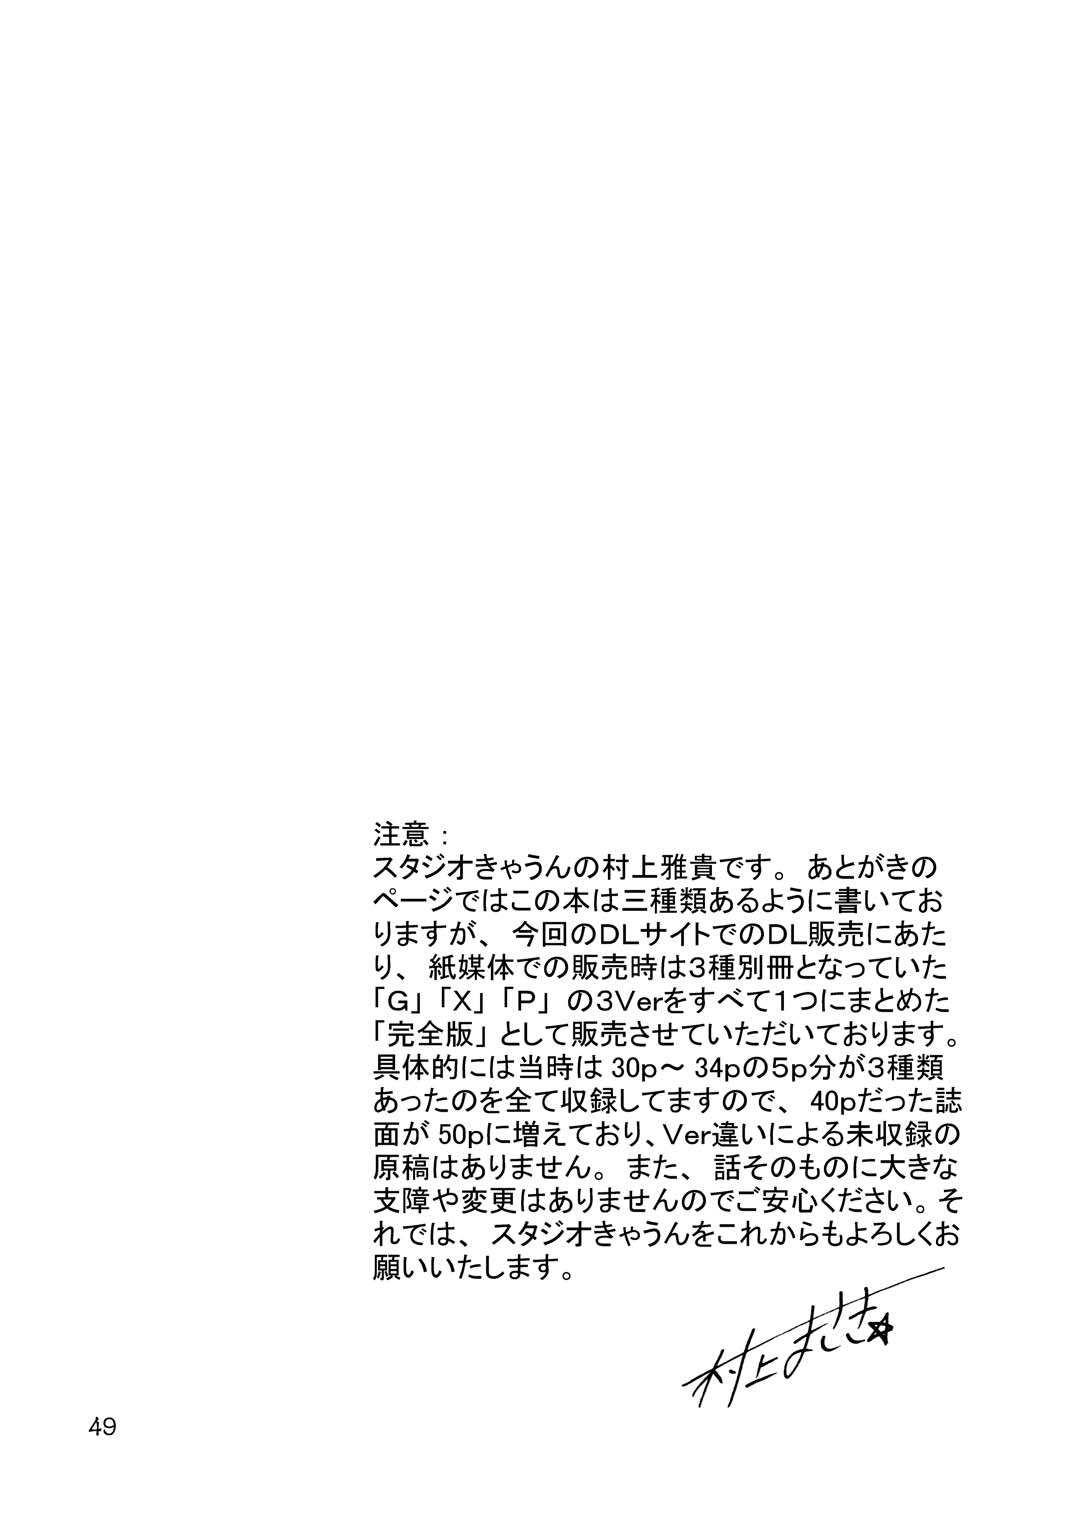 Ftvgirls GXP REQUIEM Kanzenban - Soulcalibur Blow Job Contest - Page 48